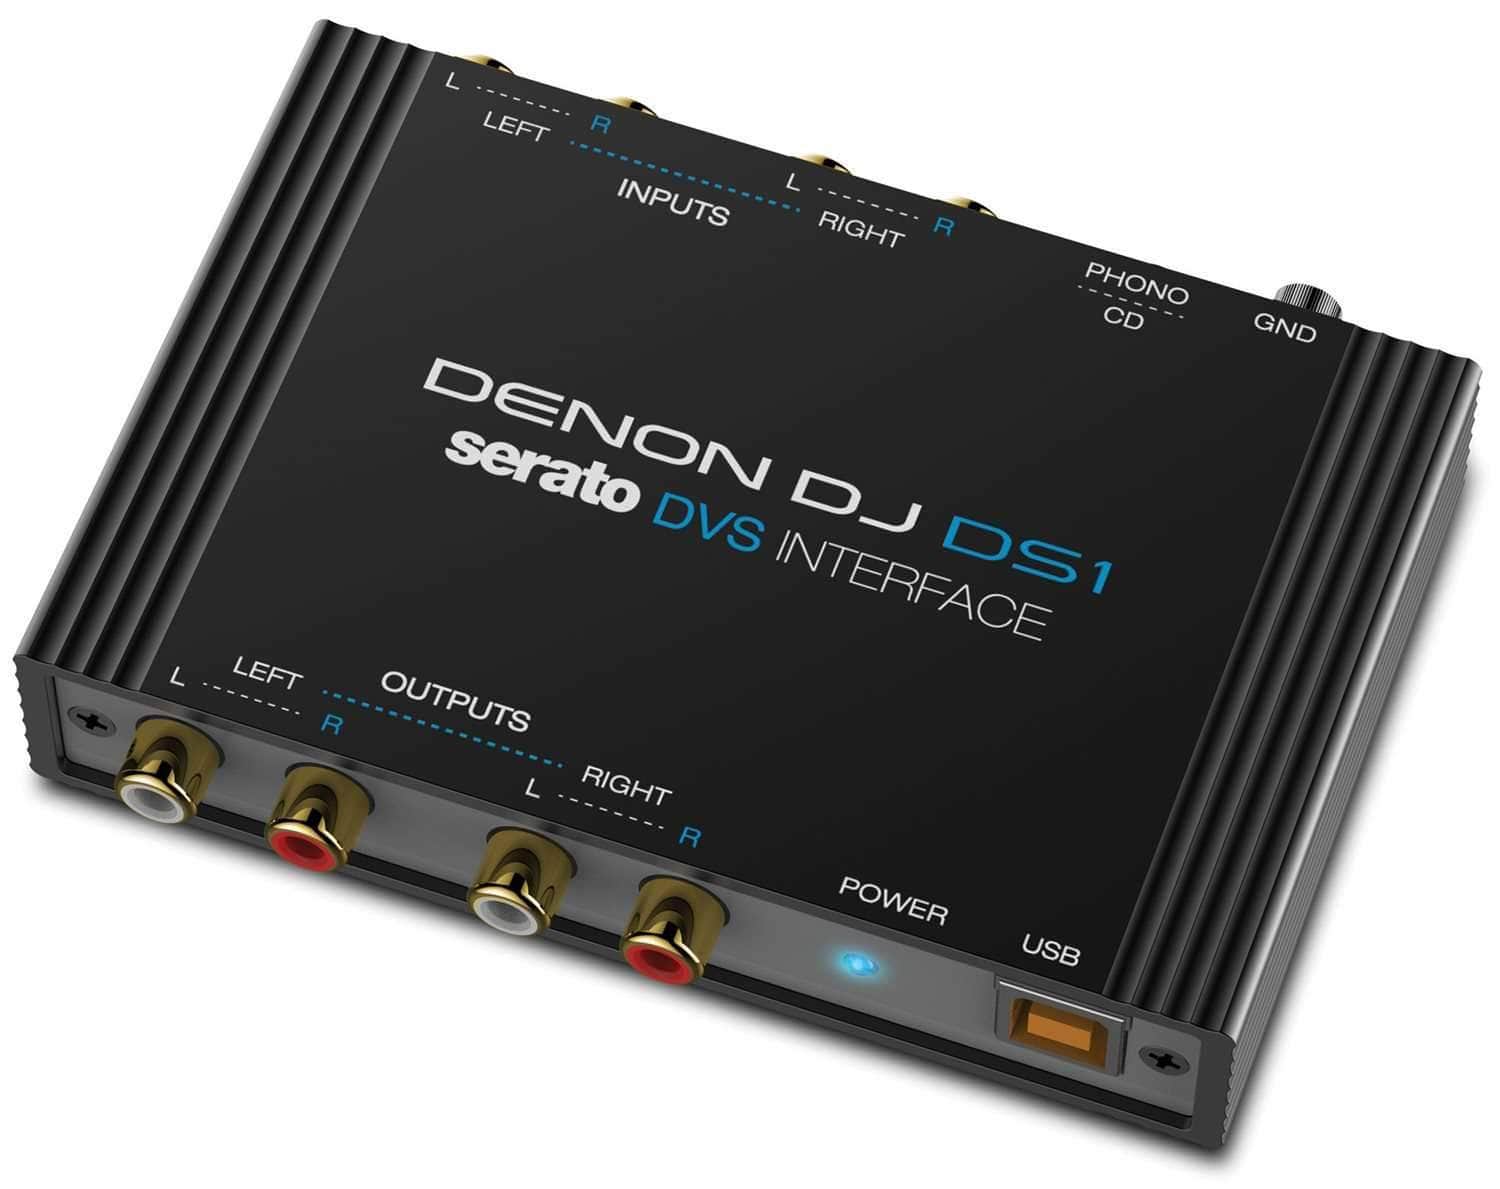 Denon DJ DS1 Serato 4-channel USB Audio Interface for Serato DJ/DVS